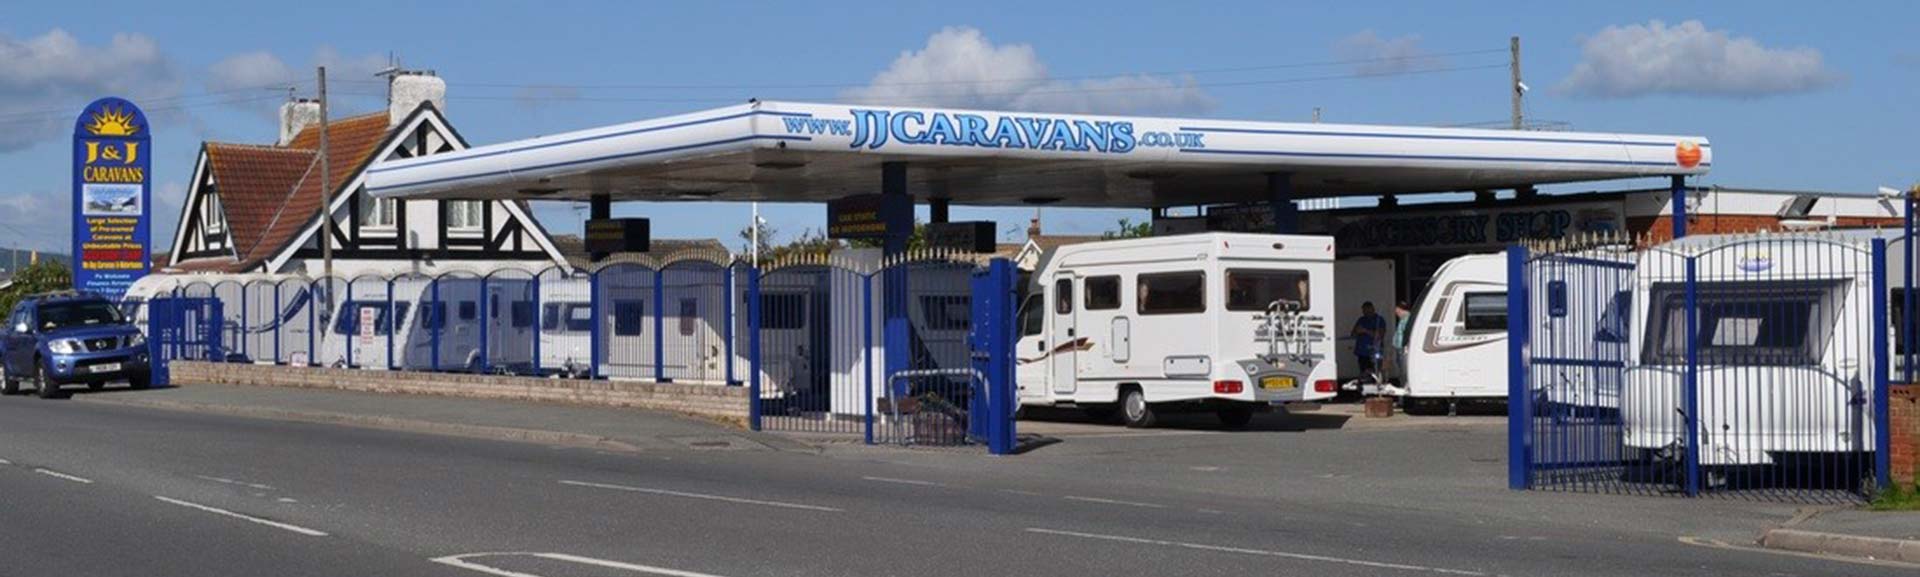 J & J Caravans and Motorhomes